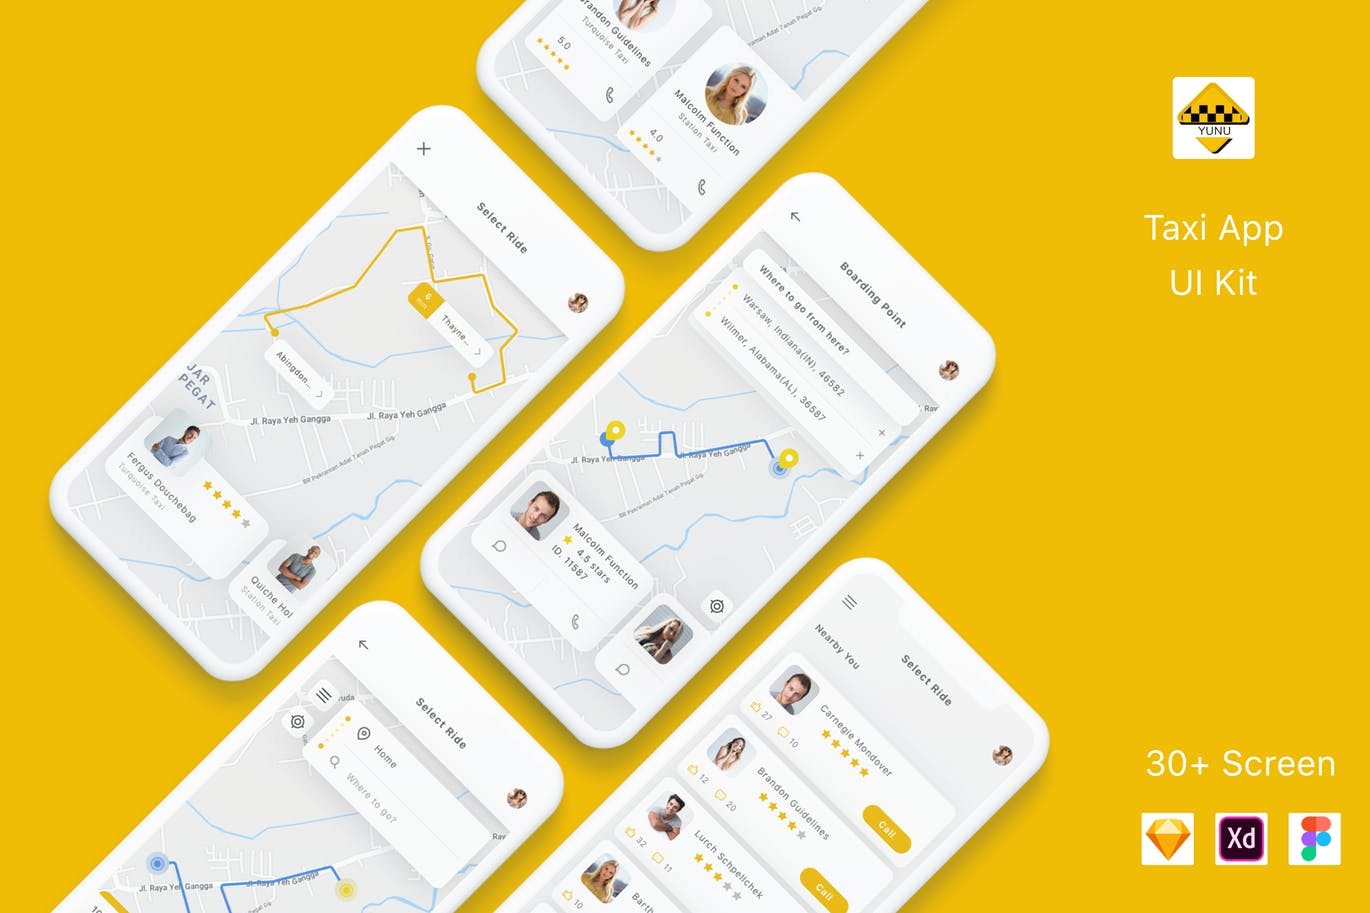 出租车预约平台APP交互界面设计大洋岛精选套件 Yunu – Taxi App UI Kit插图